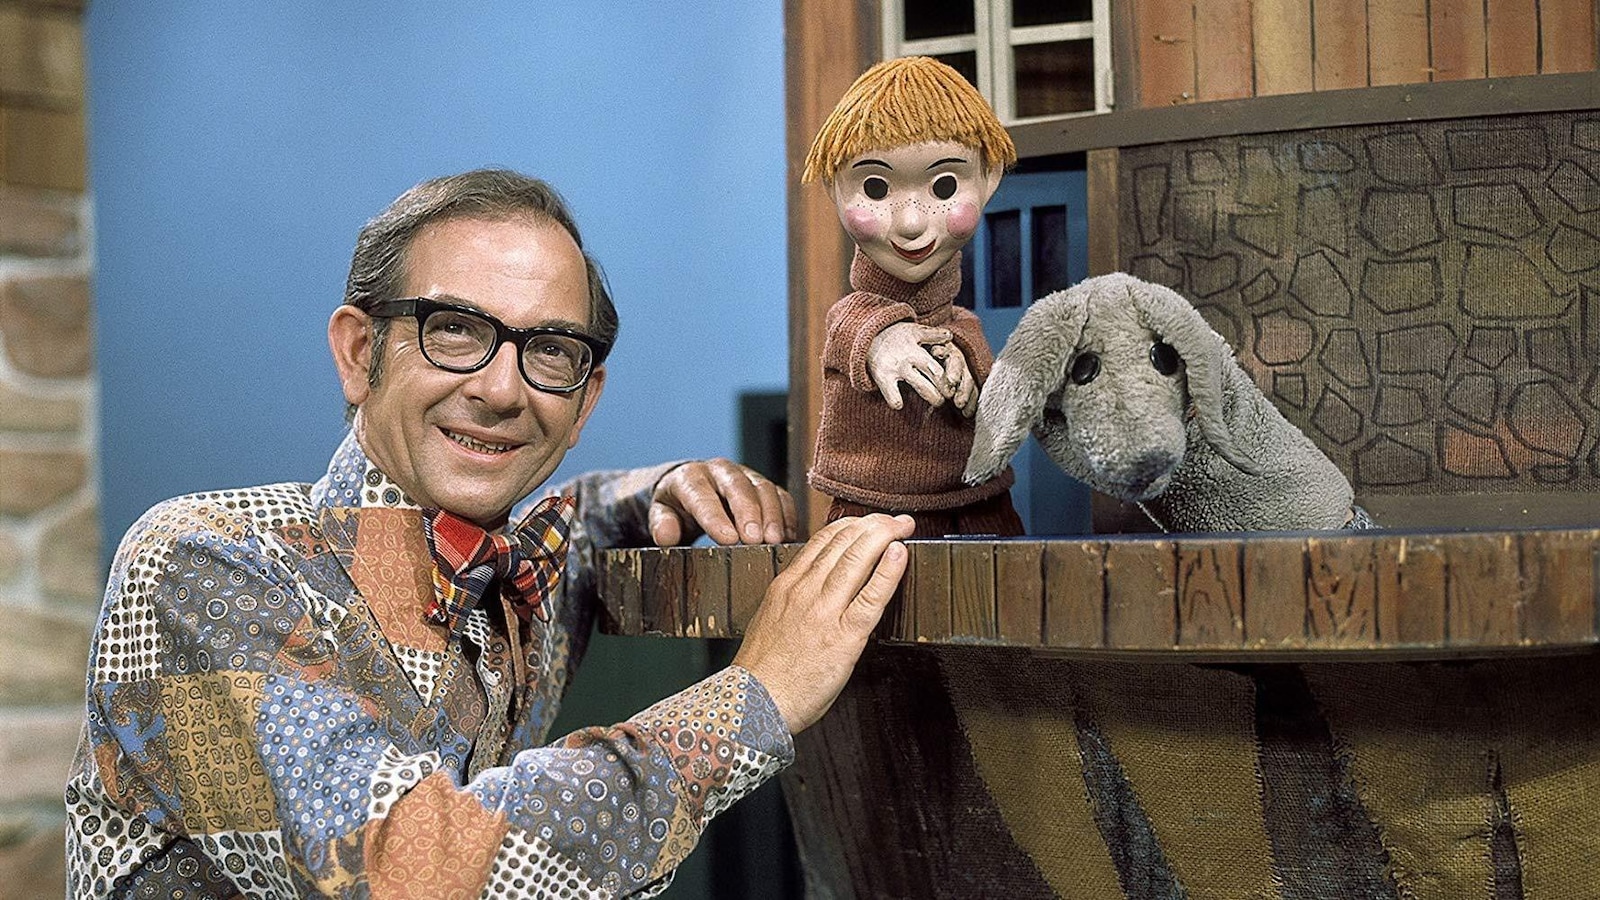 L'homme pose dans le décor de l'émission avec deux marionnettes.